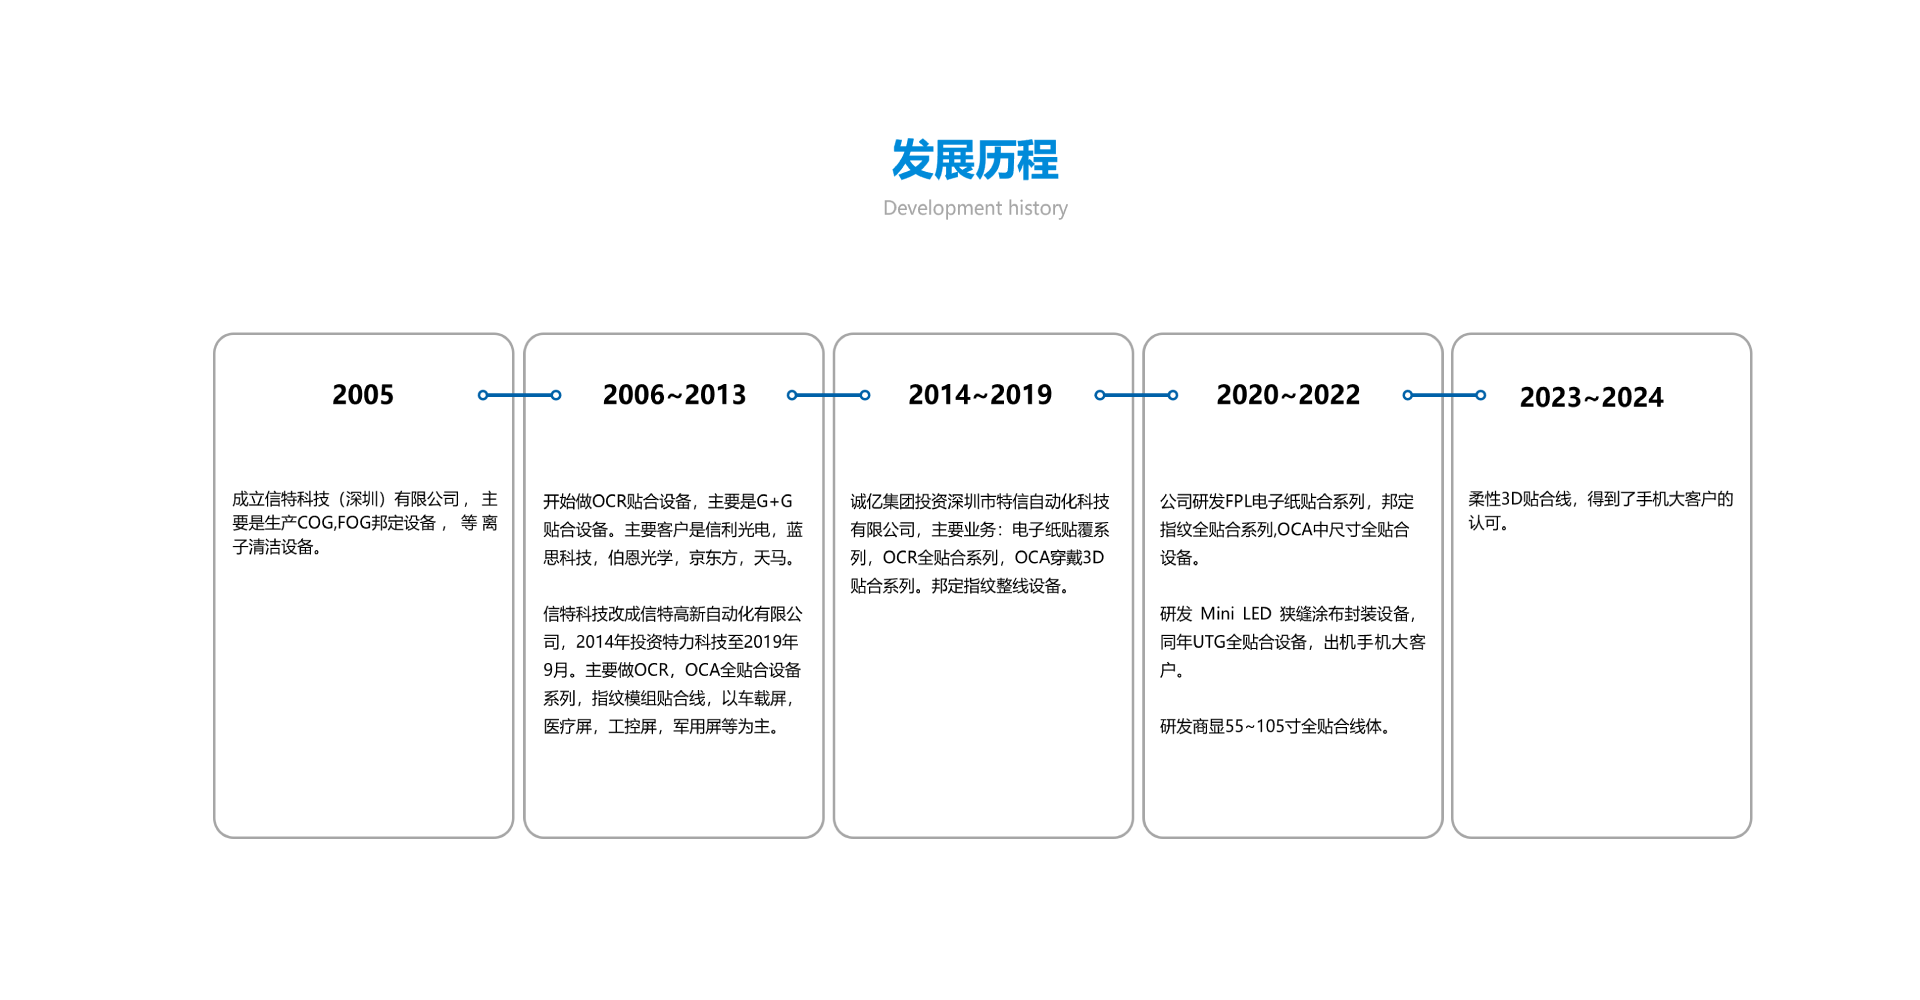 深圳市特信自动化科技有限公司